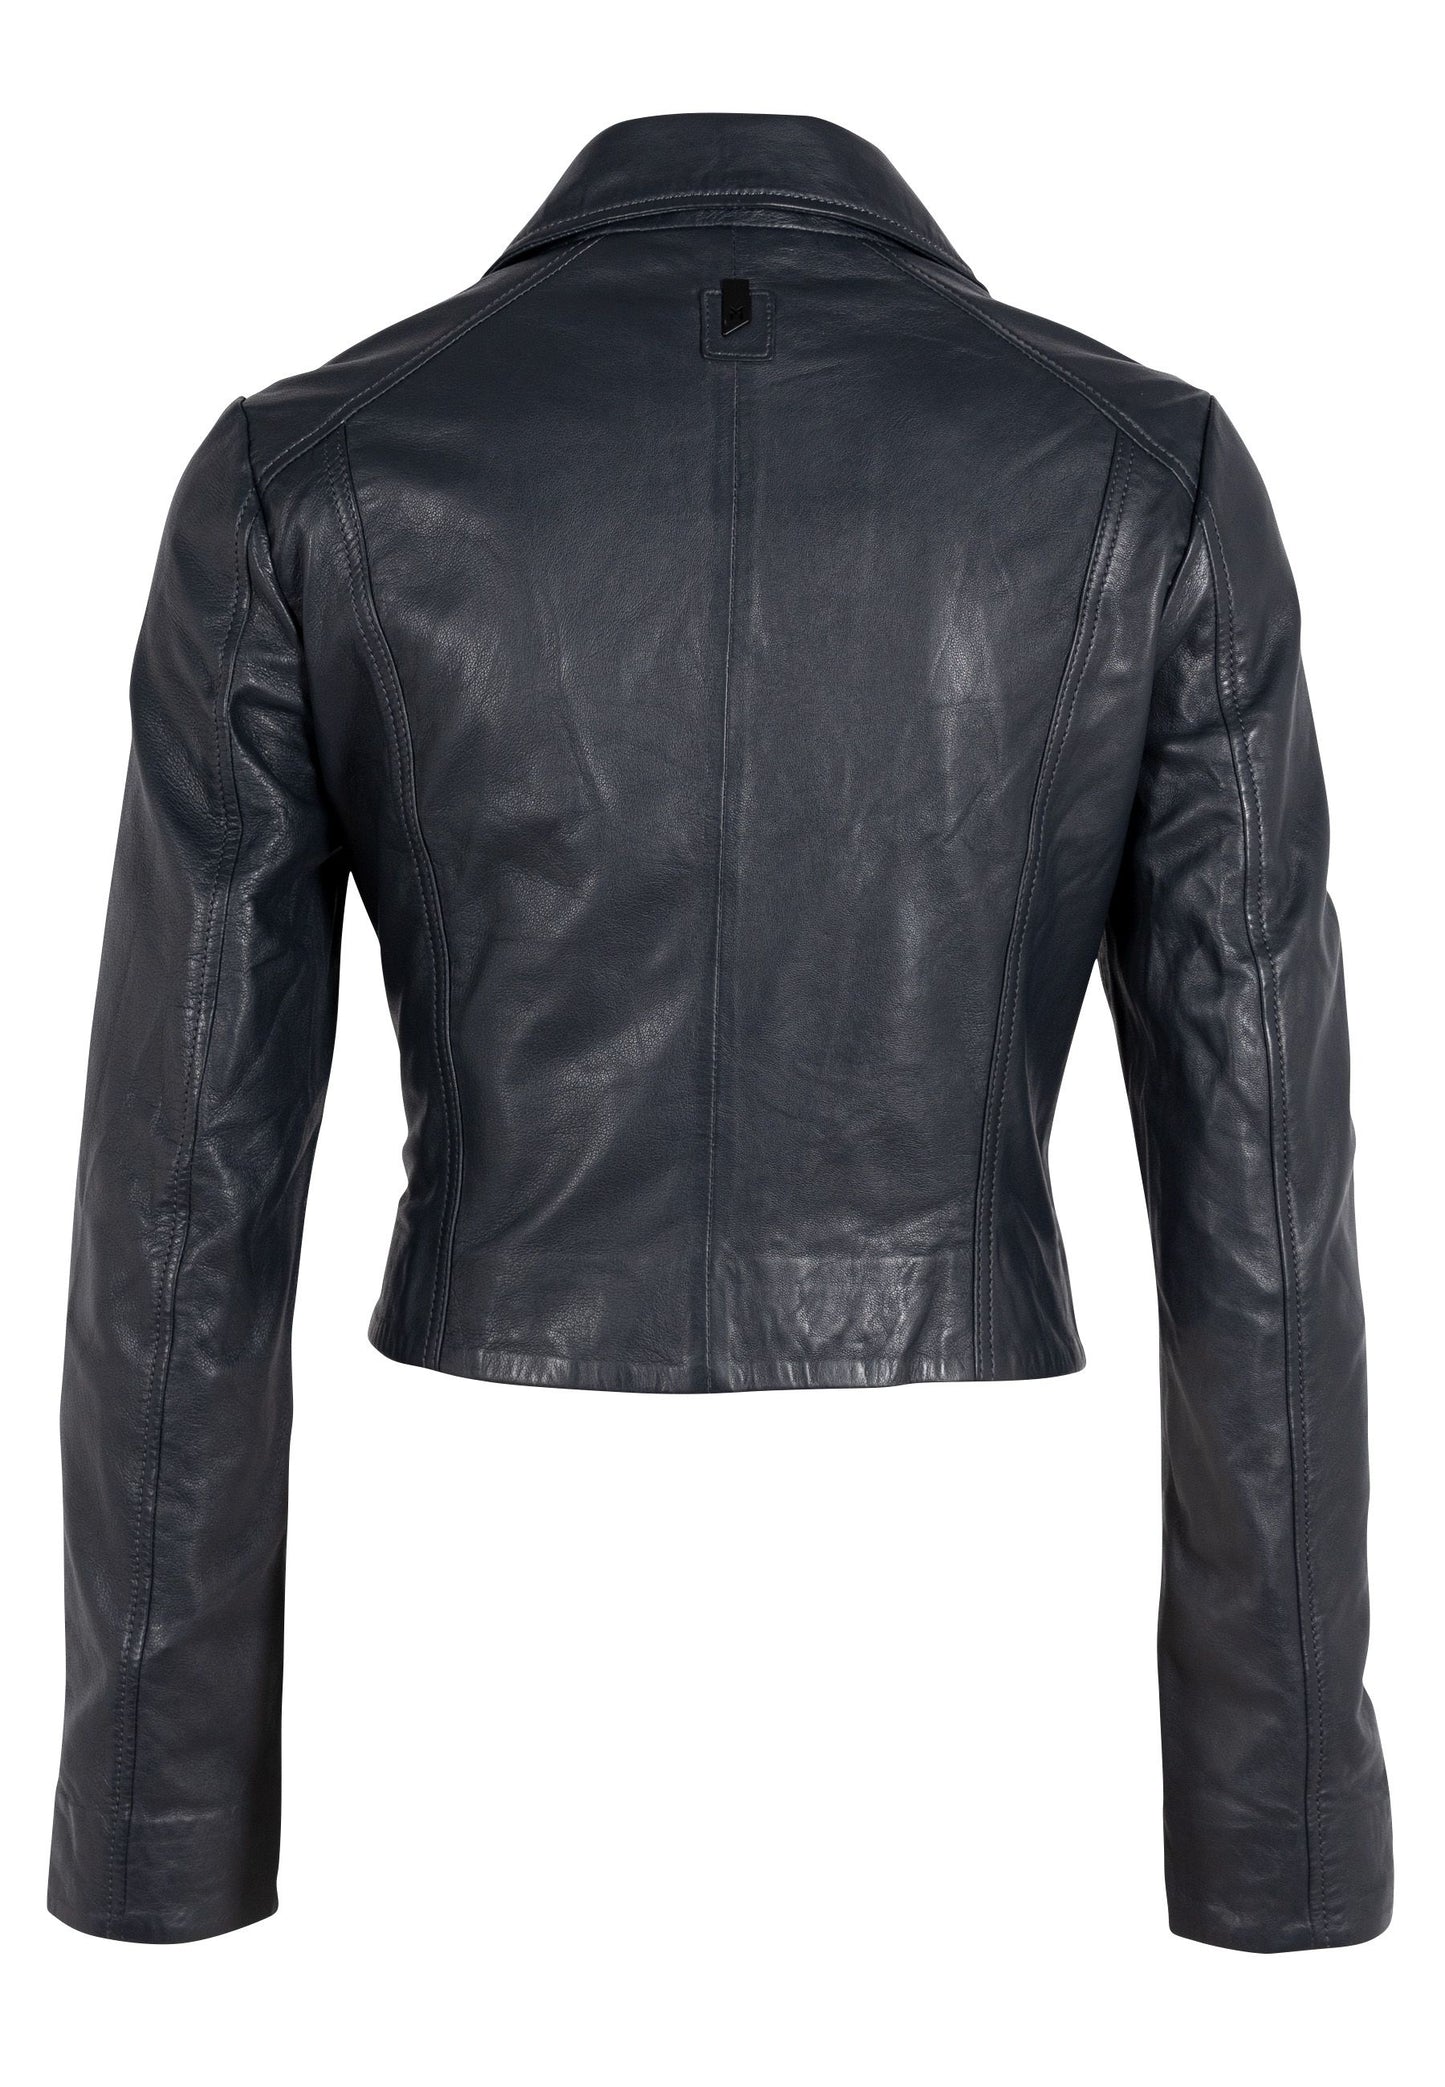 Acita RF Leather Jacket, Black